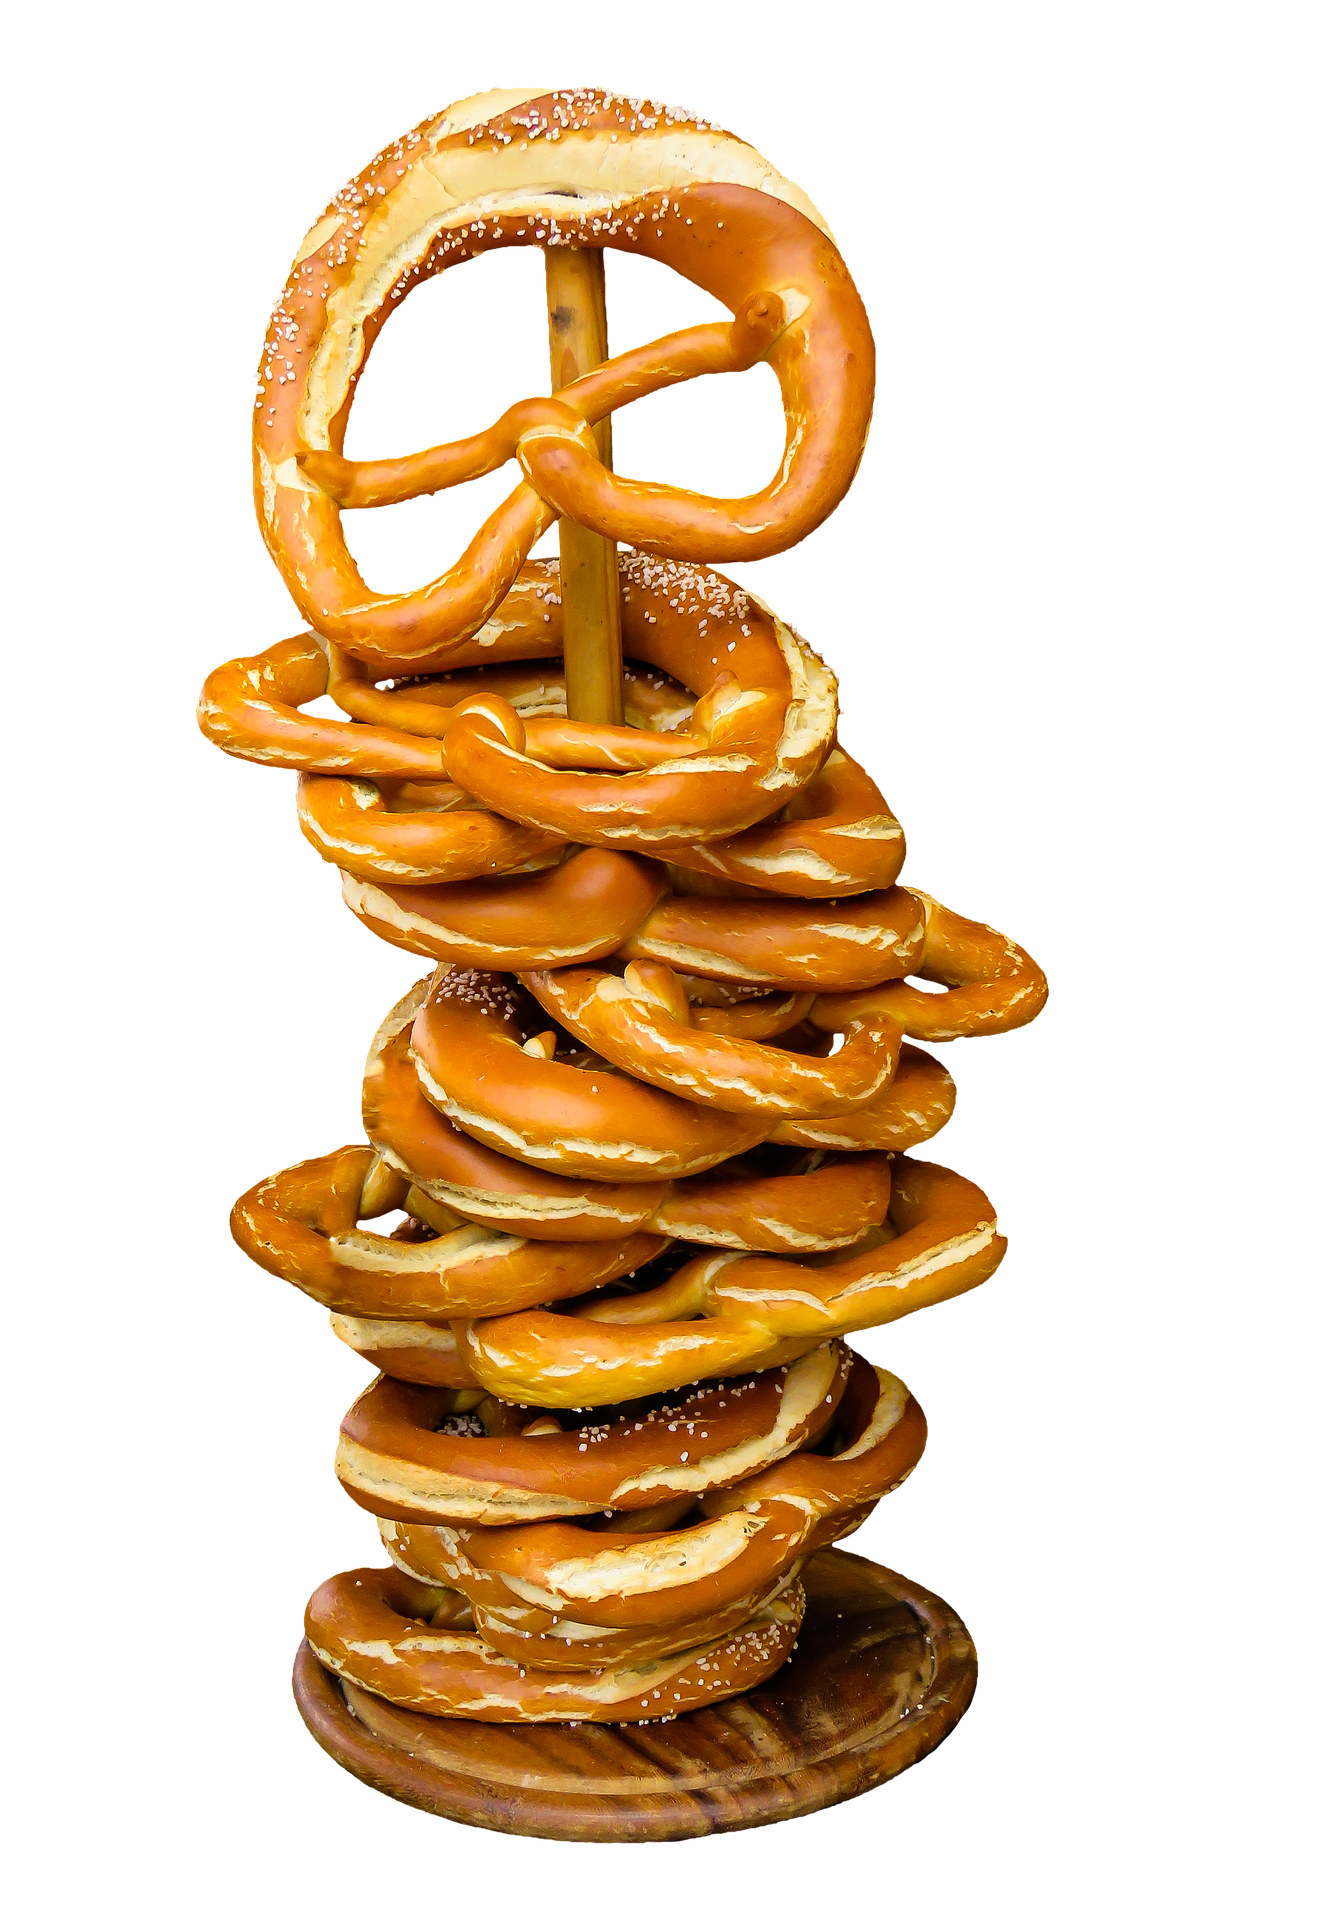 Baked pretzel photo